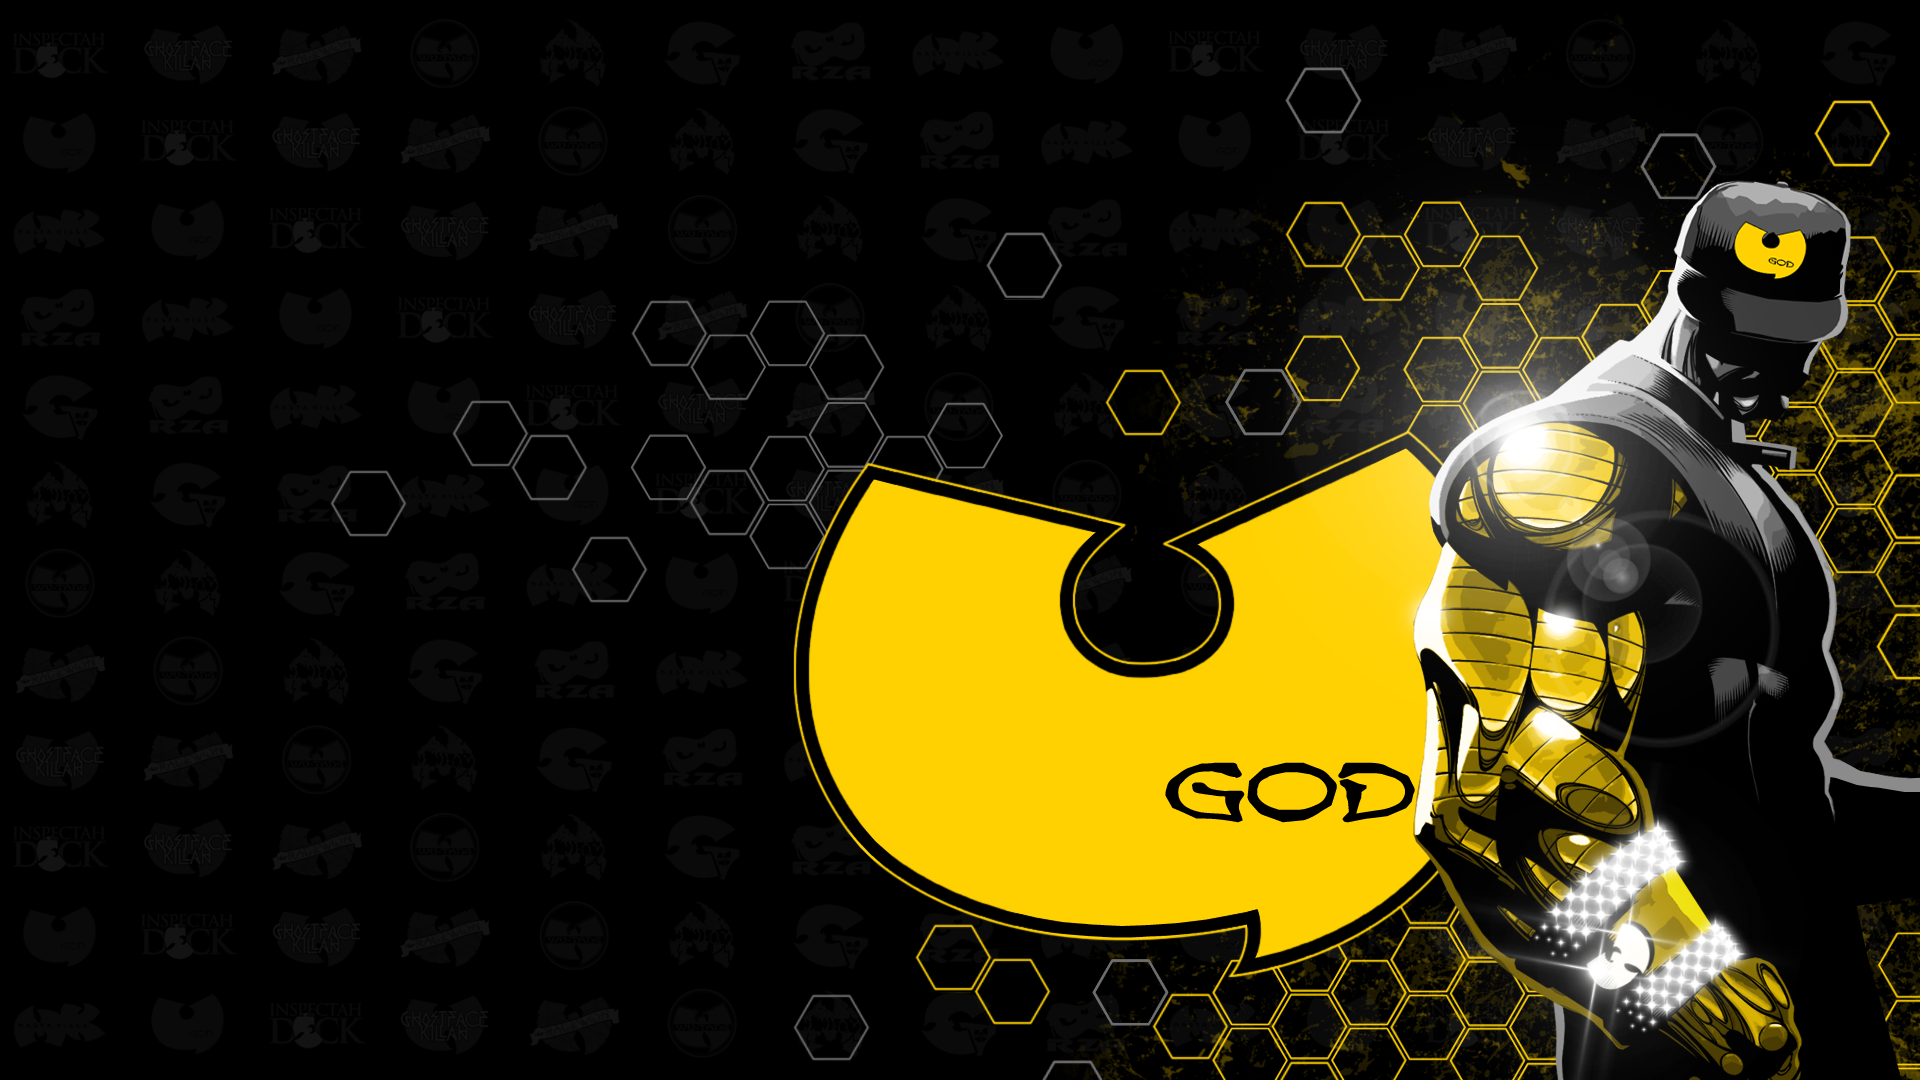 Wu Tang Clan Logos U God as Golden Arms by uLtRaMa6nEt1cART